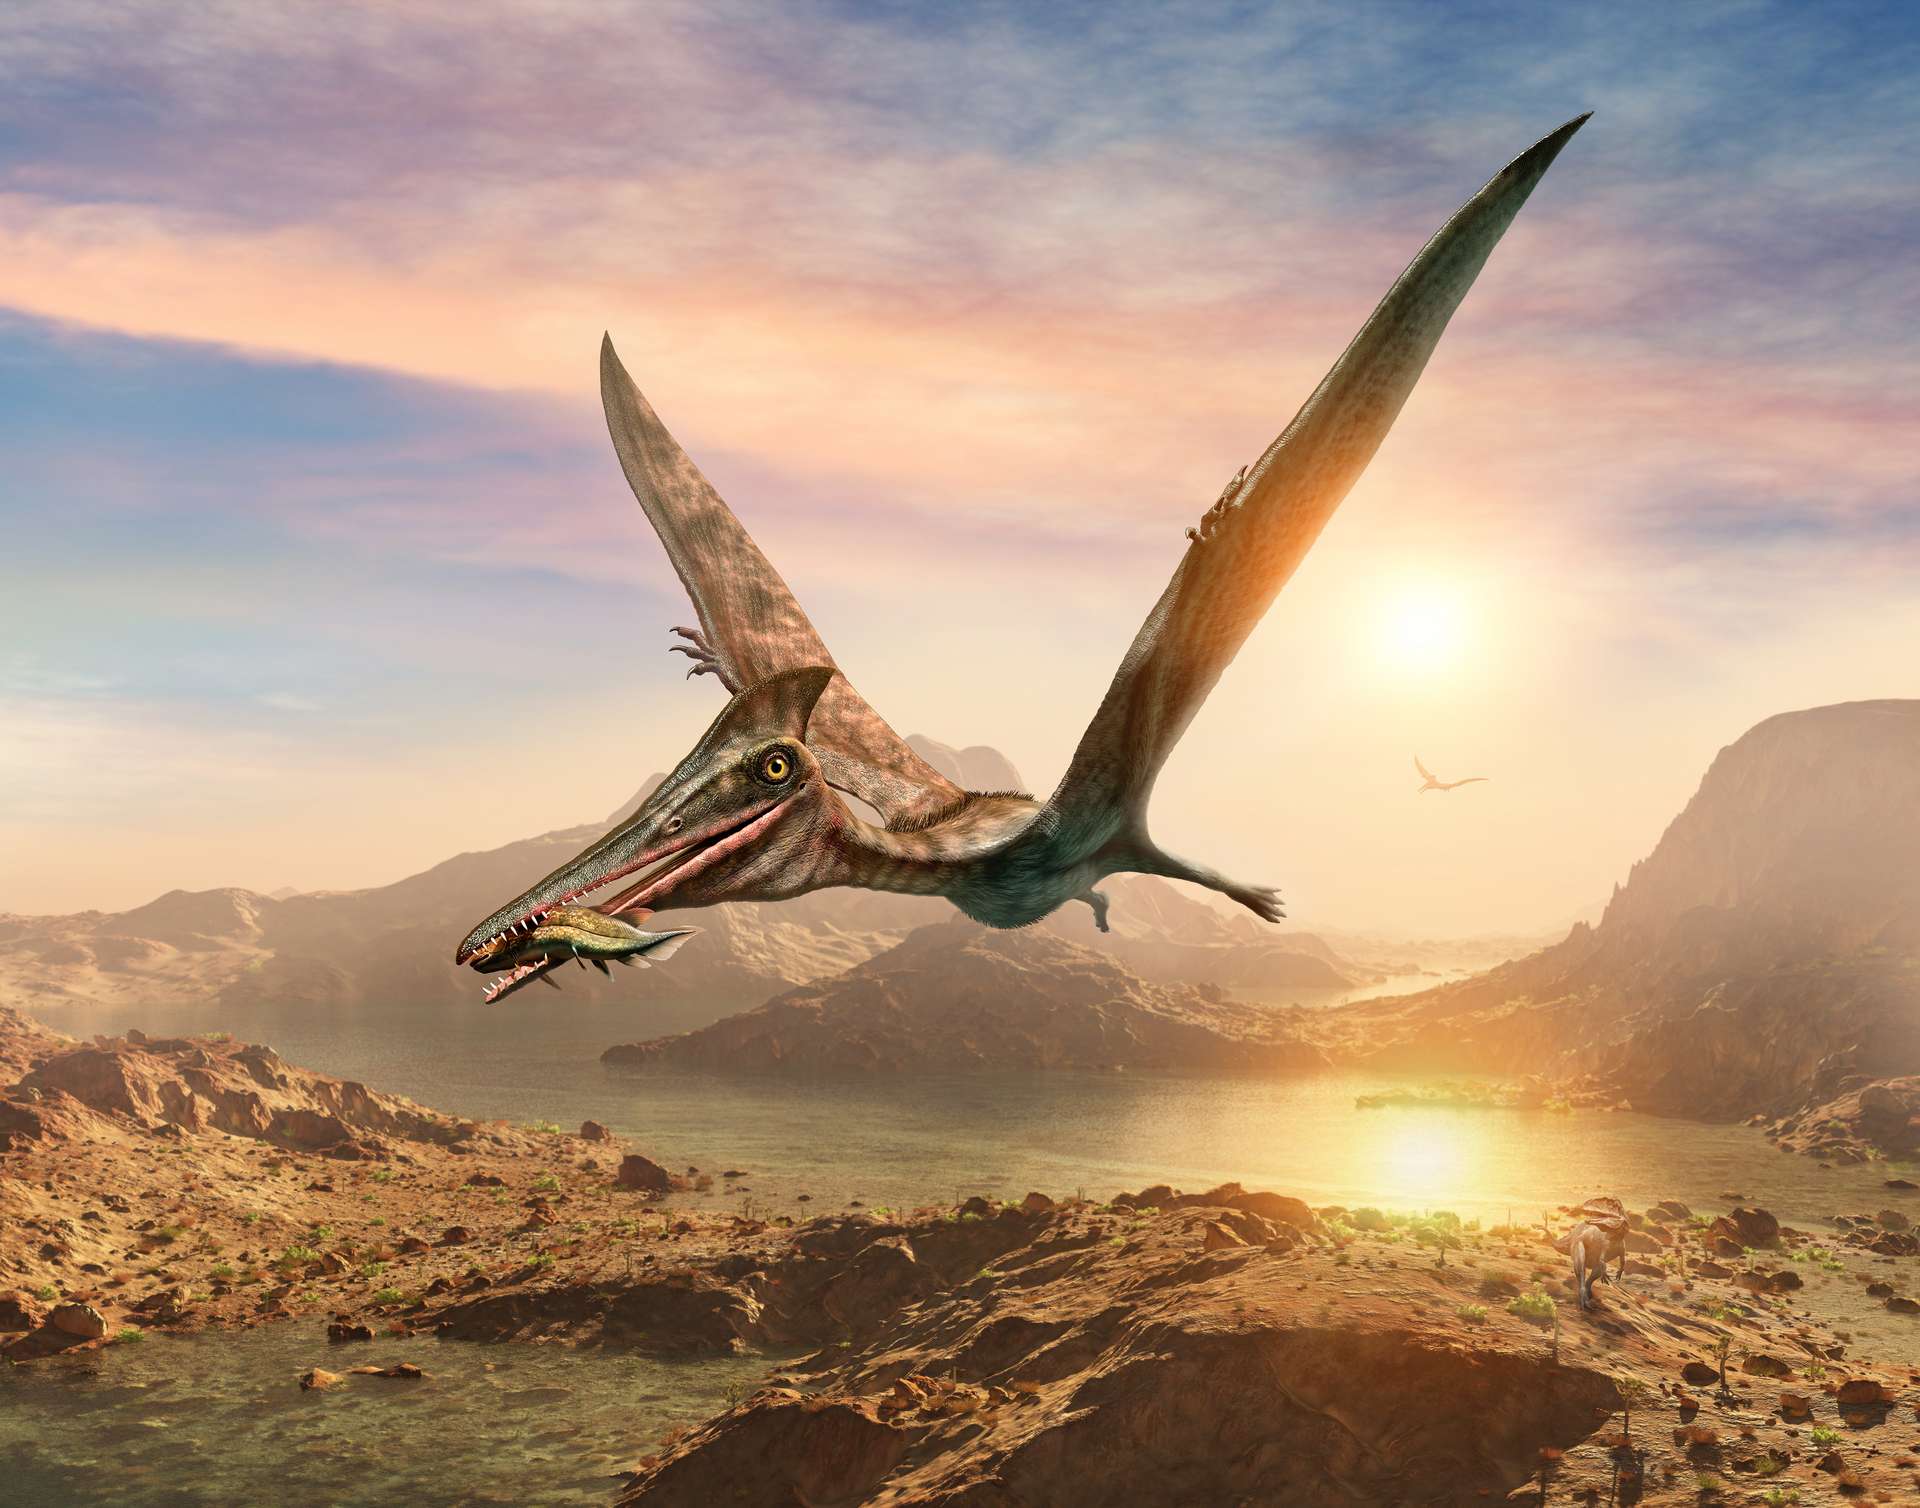 Ces fossiles montrent que les ptérosaures pouvaient survivre au climat extrême du cercle polaire austral